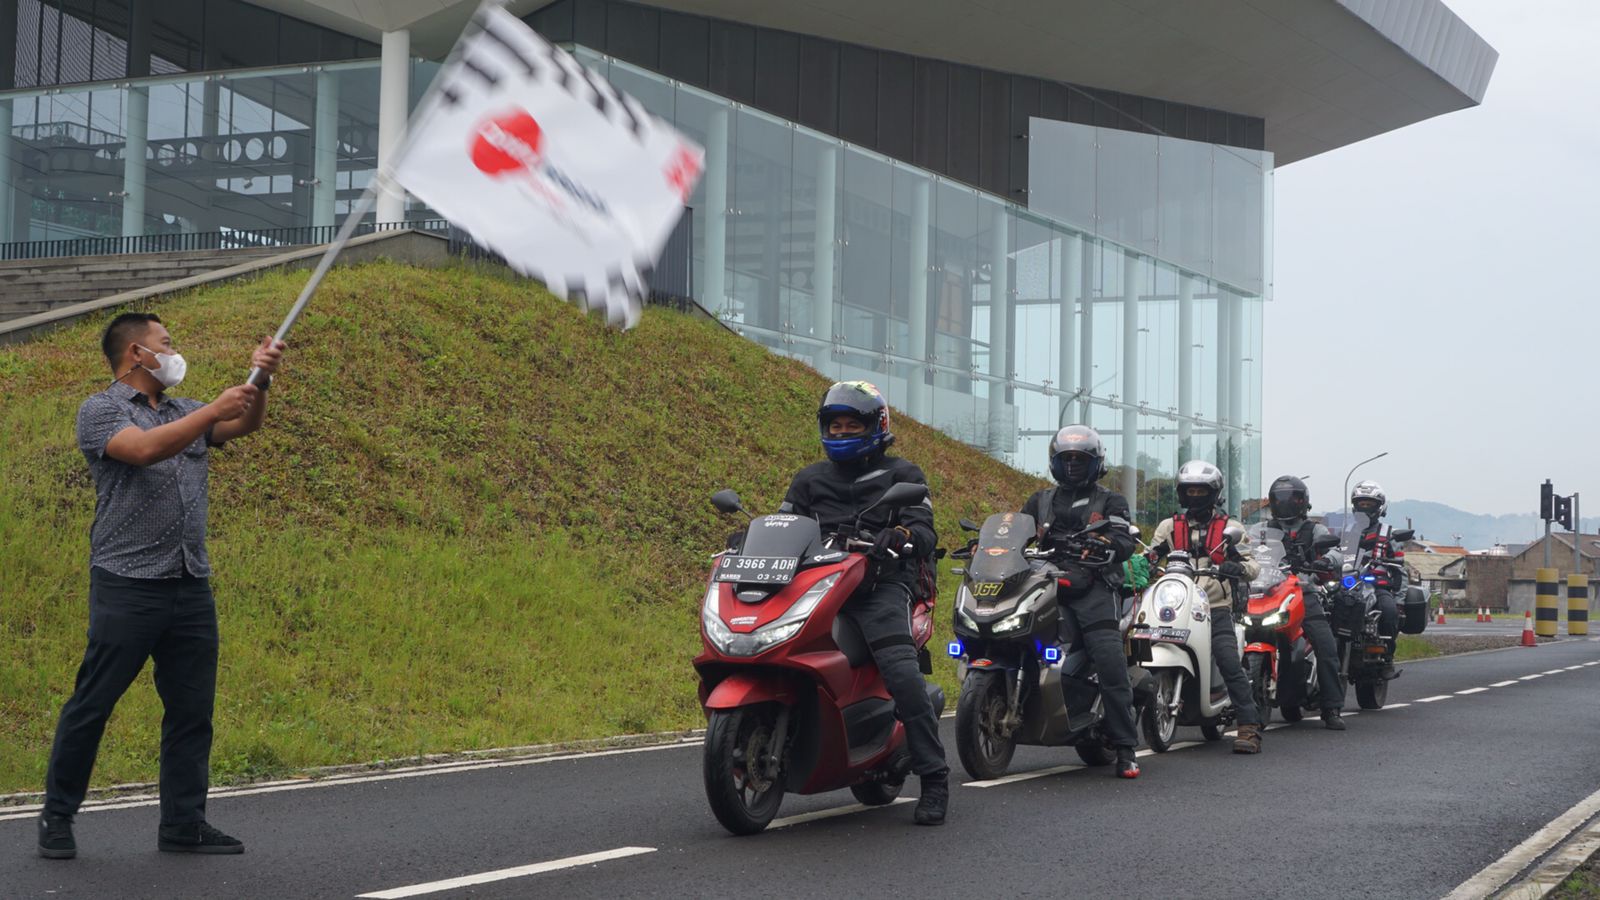 4 Bikers Honda Asal jawa Barat Touring dan Nonton MotoGP Langsung di Mandalika